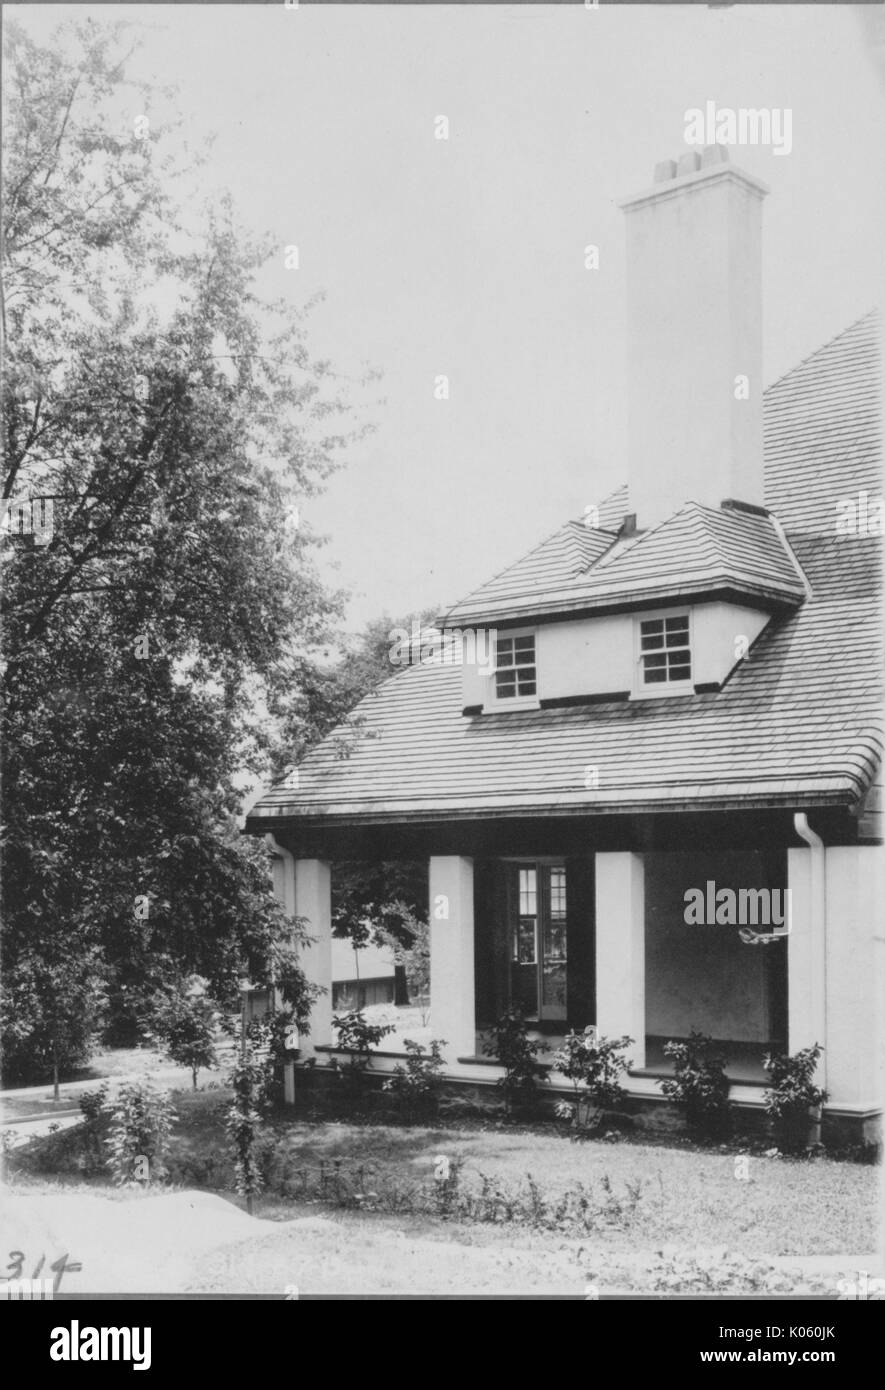 Seite Winkel auf der Seite Veranda eines Hauses in der Nähe von Roland Park und Guilford, die seitlichen Veranda hat mehrere leichte farbige Spalten als Unterstützung und es gibt einige Büsche um es platziert, Baltimore, Maryland, 1910. Stockfoto